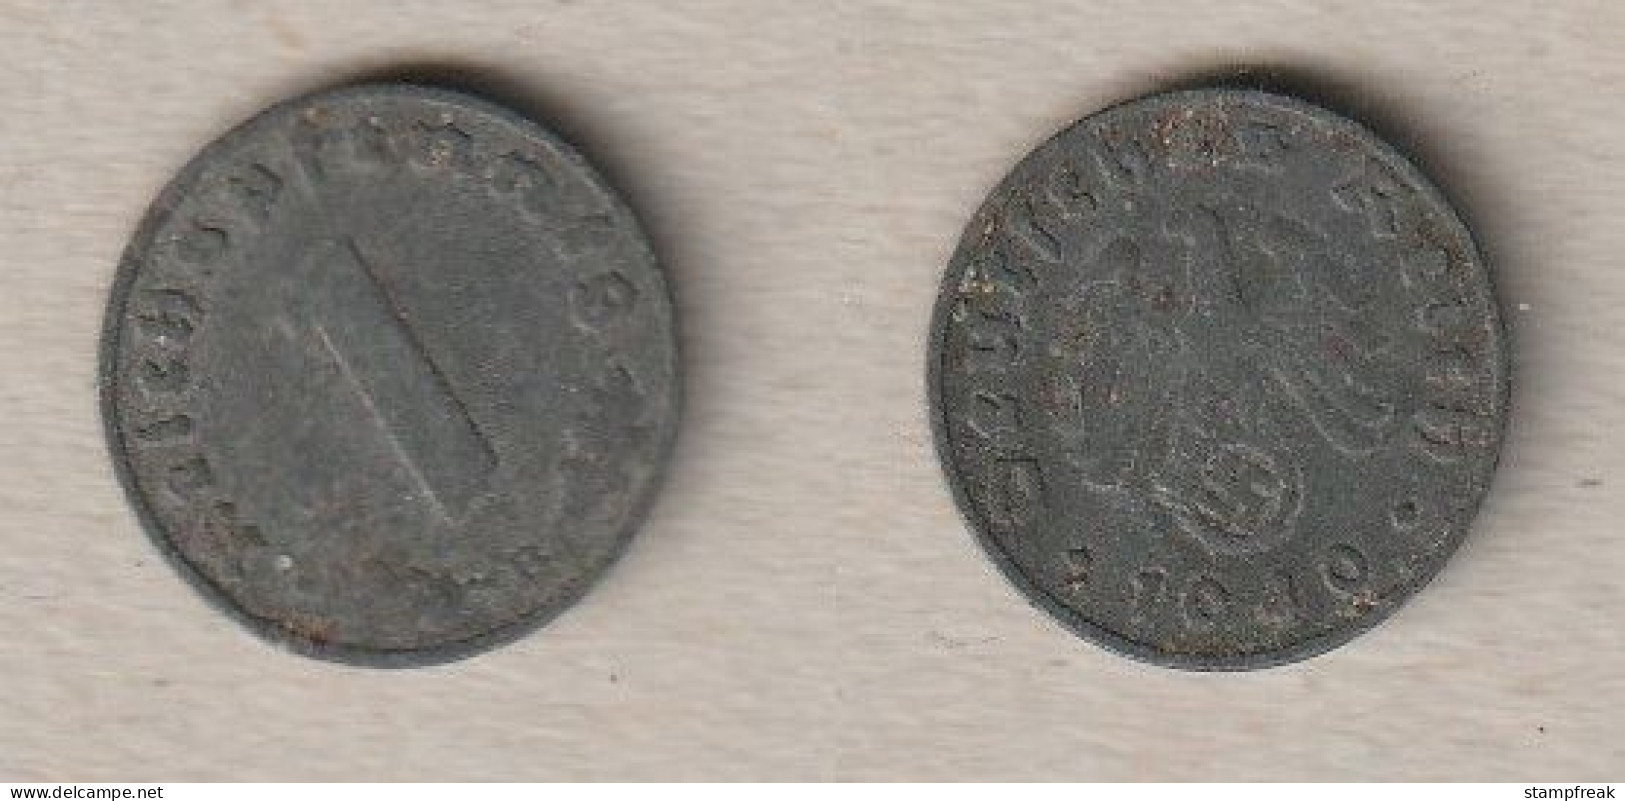 007652) Deutschland, 3. Reich, 1 Reichspfennig 1940B - 1 Reichspfennig